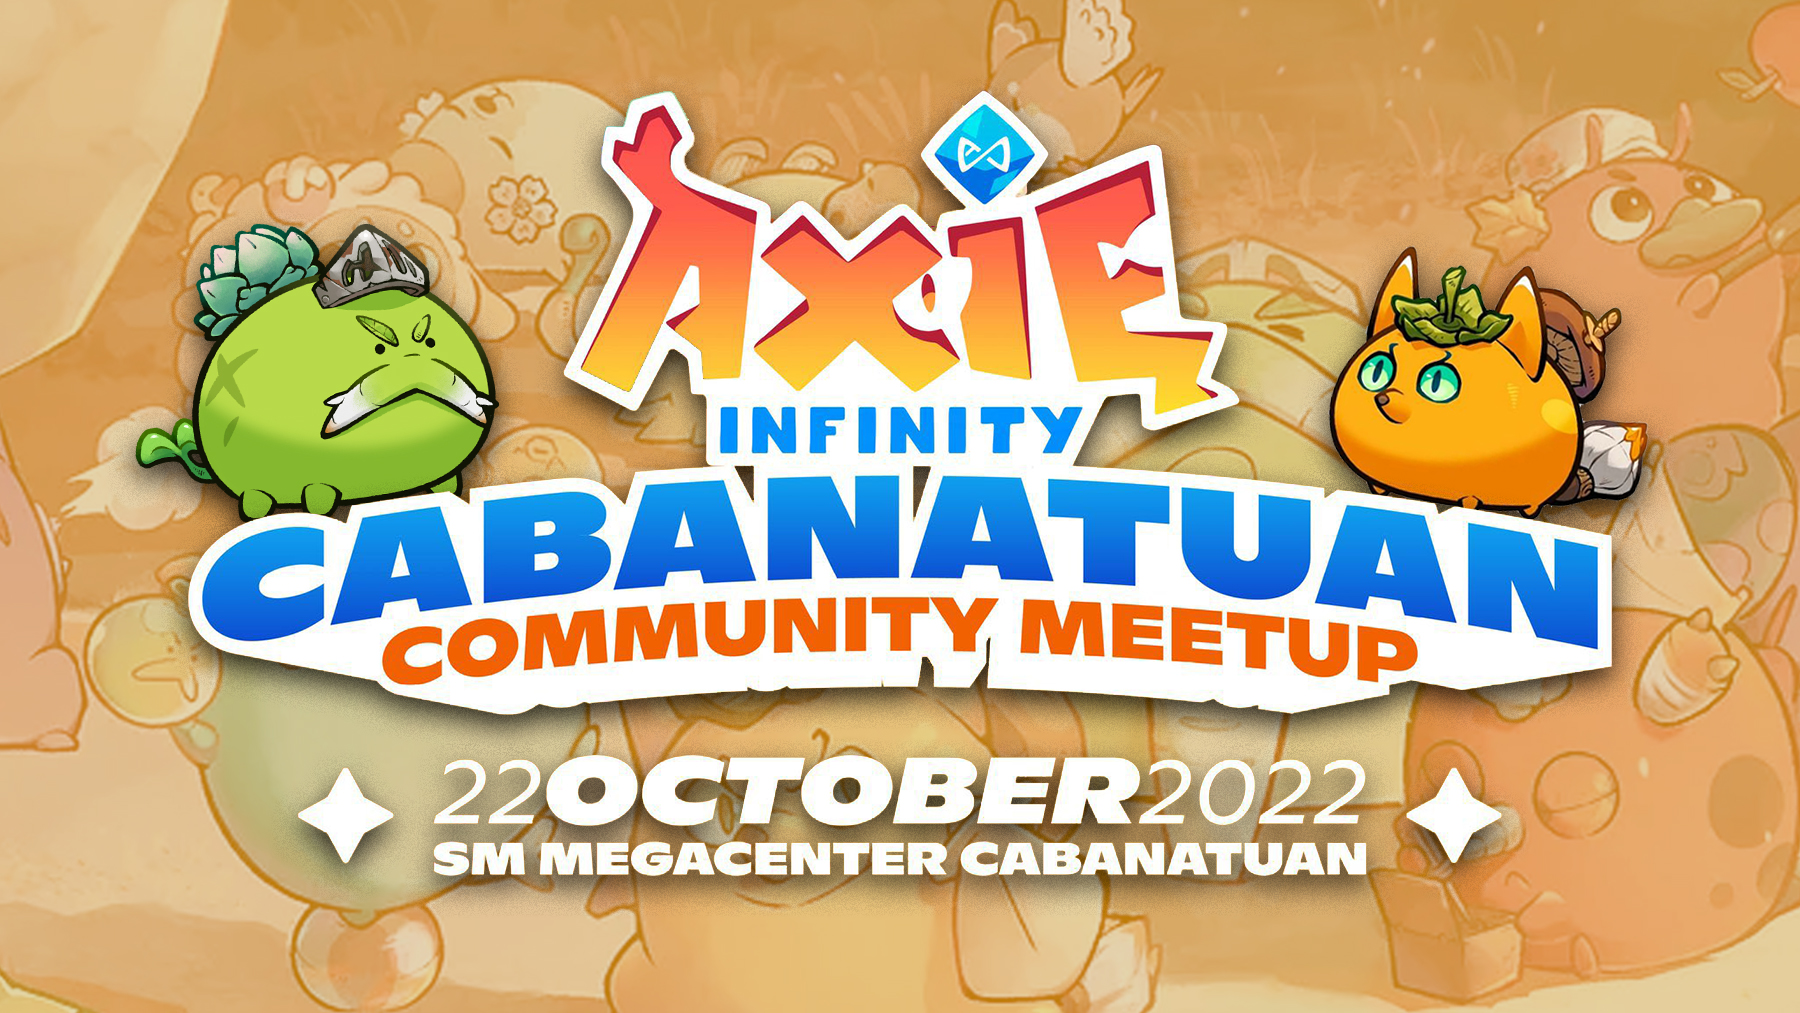 Reunión comunitaria de la ciudad de Axie Infinity Cabanatuan